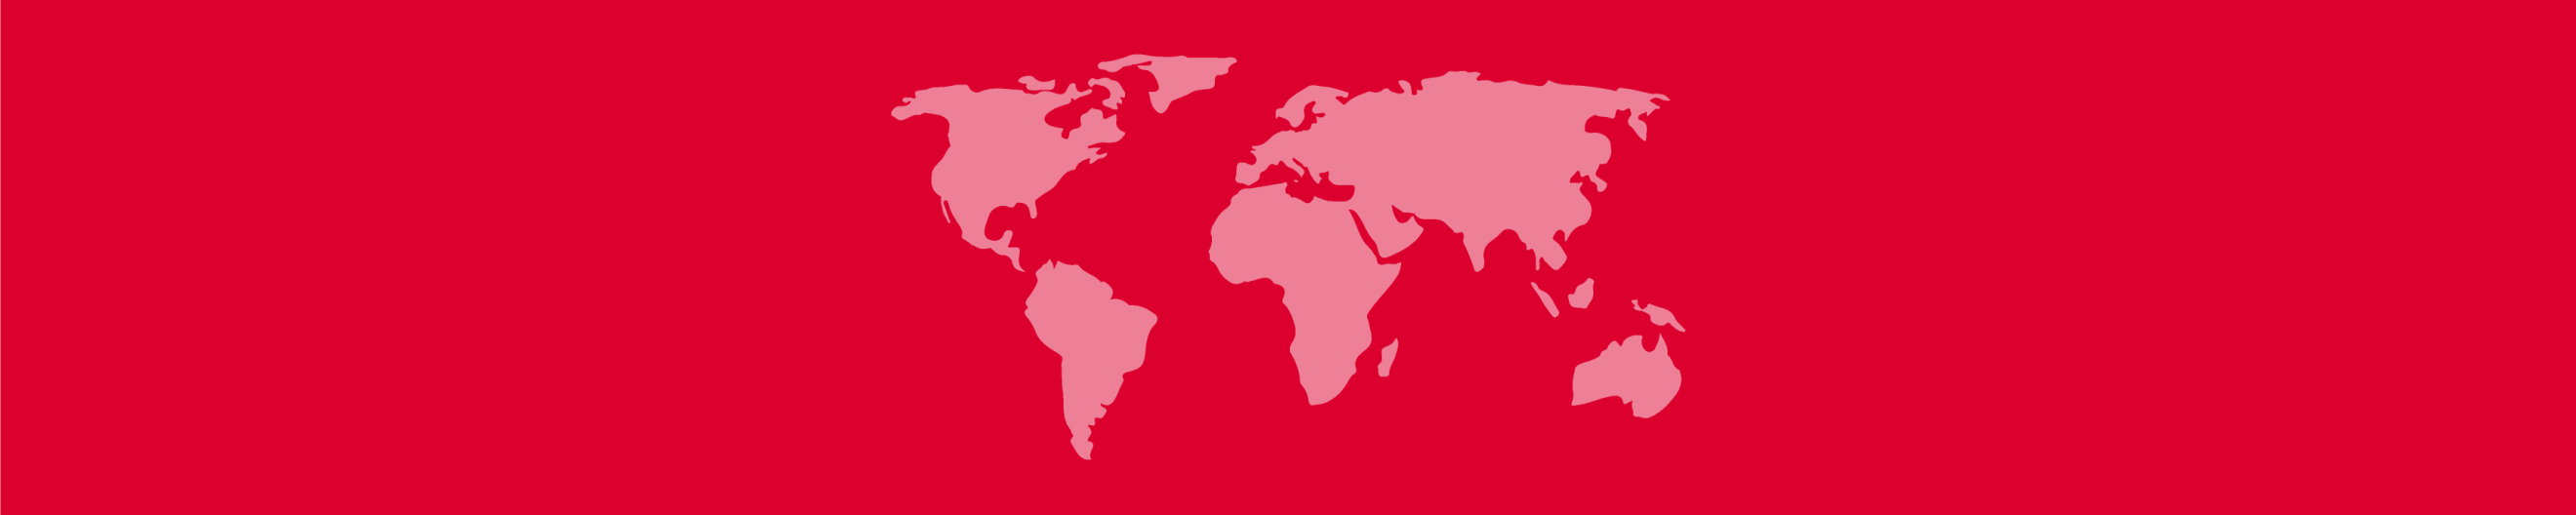 Bannerbild weiße Weltkarte auf rotem Hintergrund